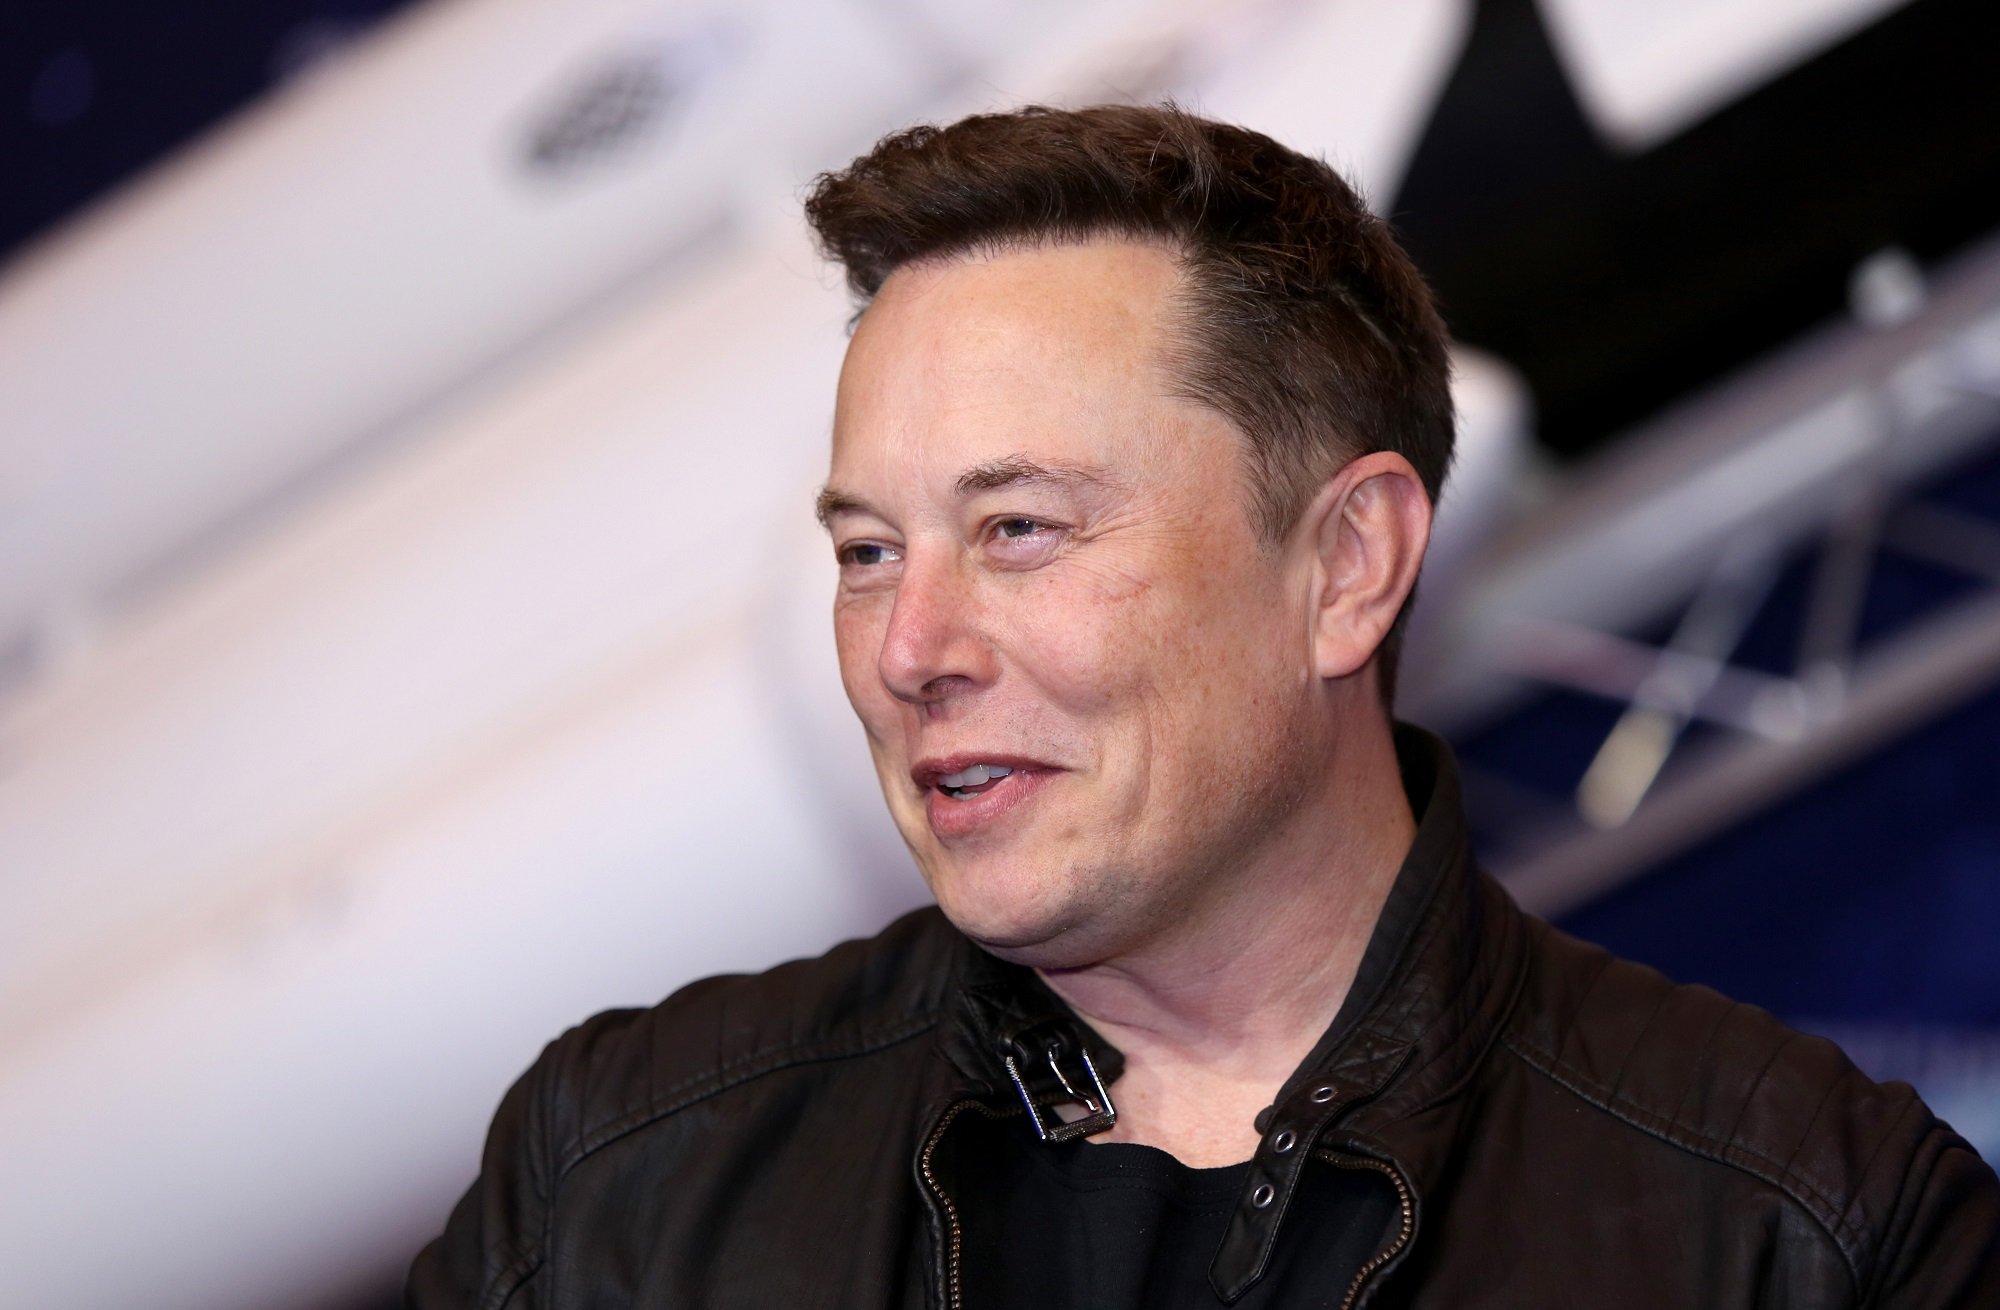 Elon Musk will host SNL on May 8